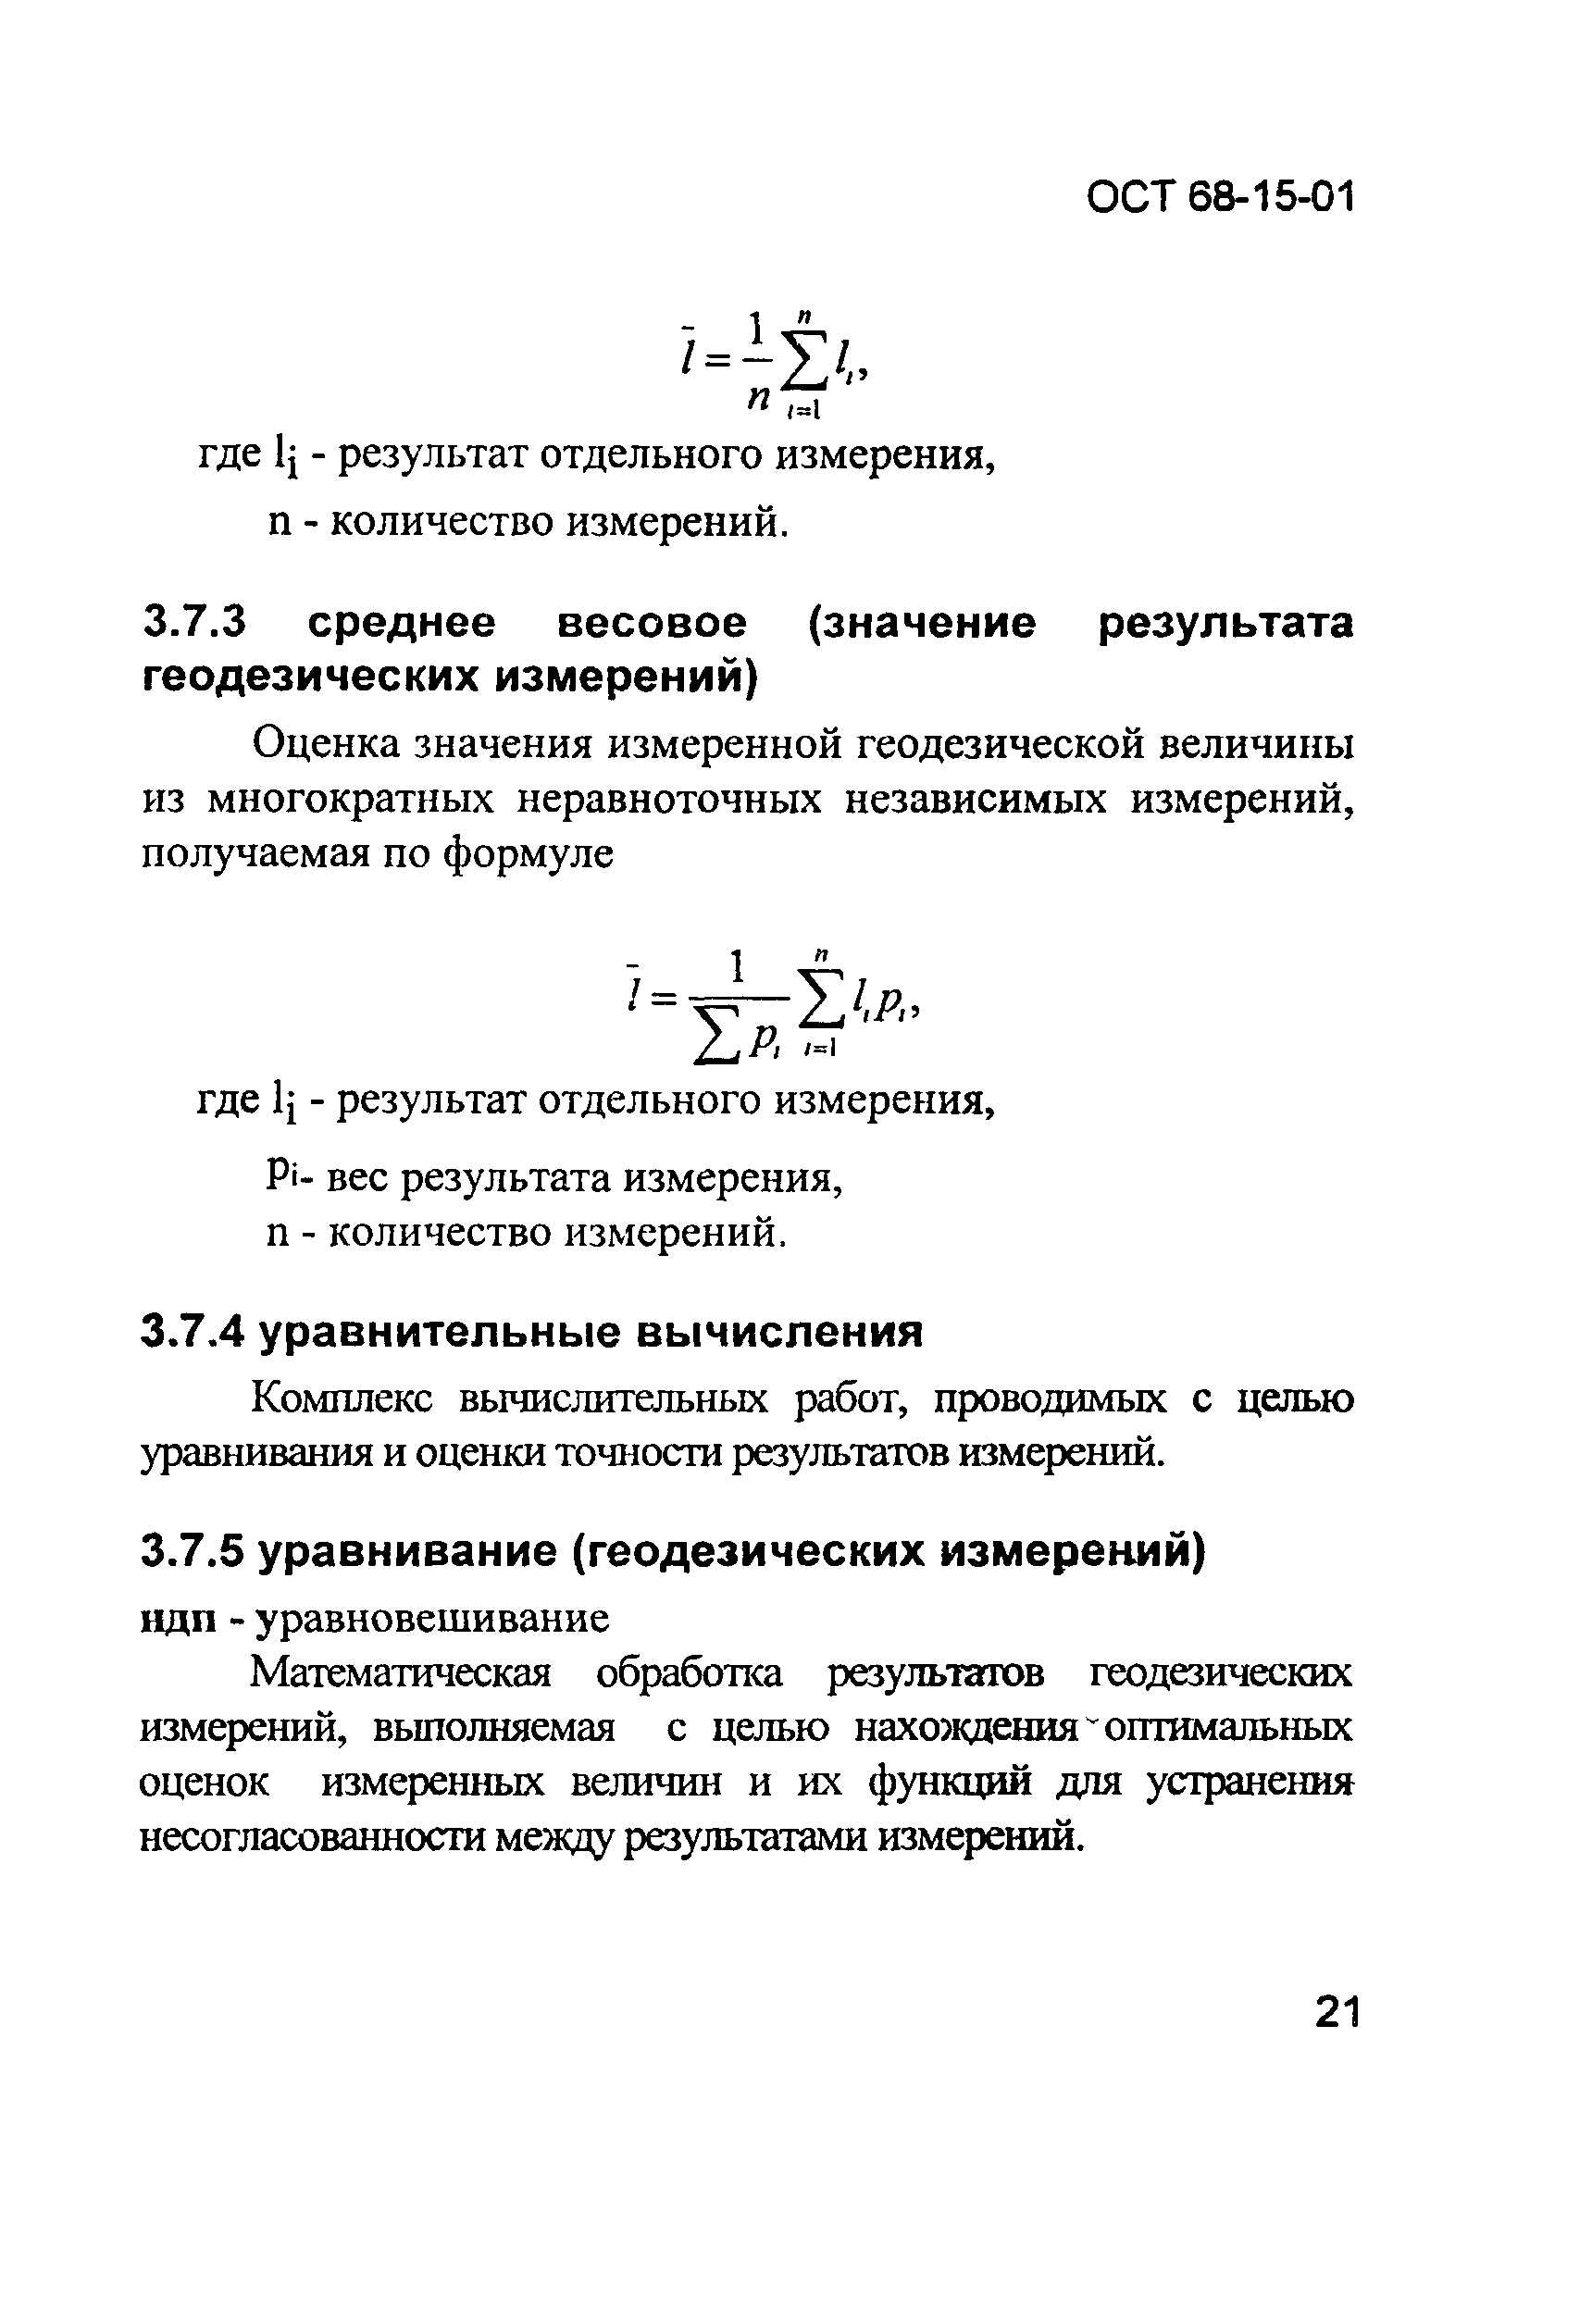 ОСТ 68-15-01